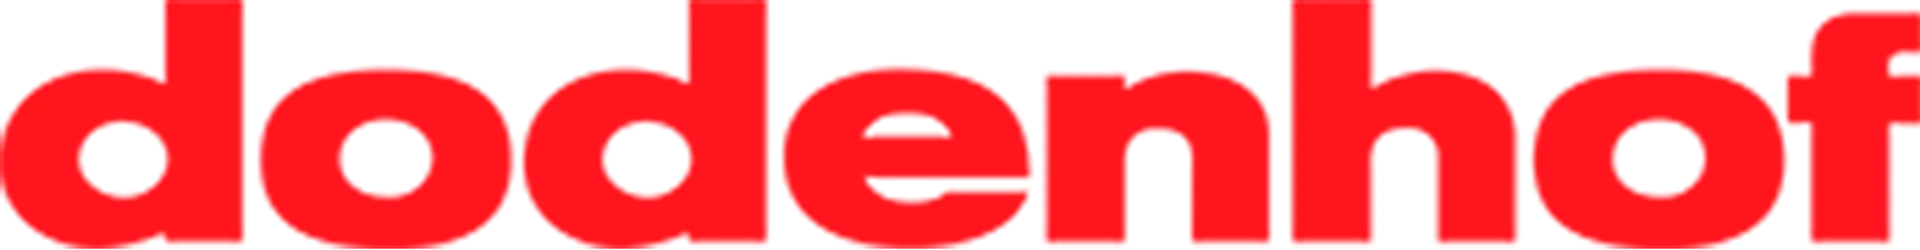 DODENHOF logo die aktuell Flugblatt